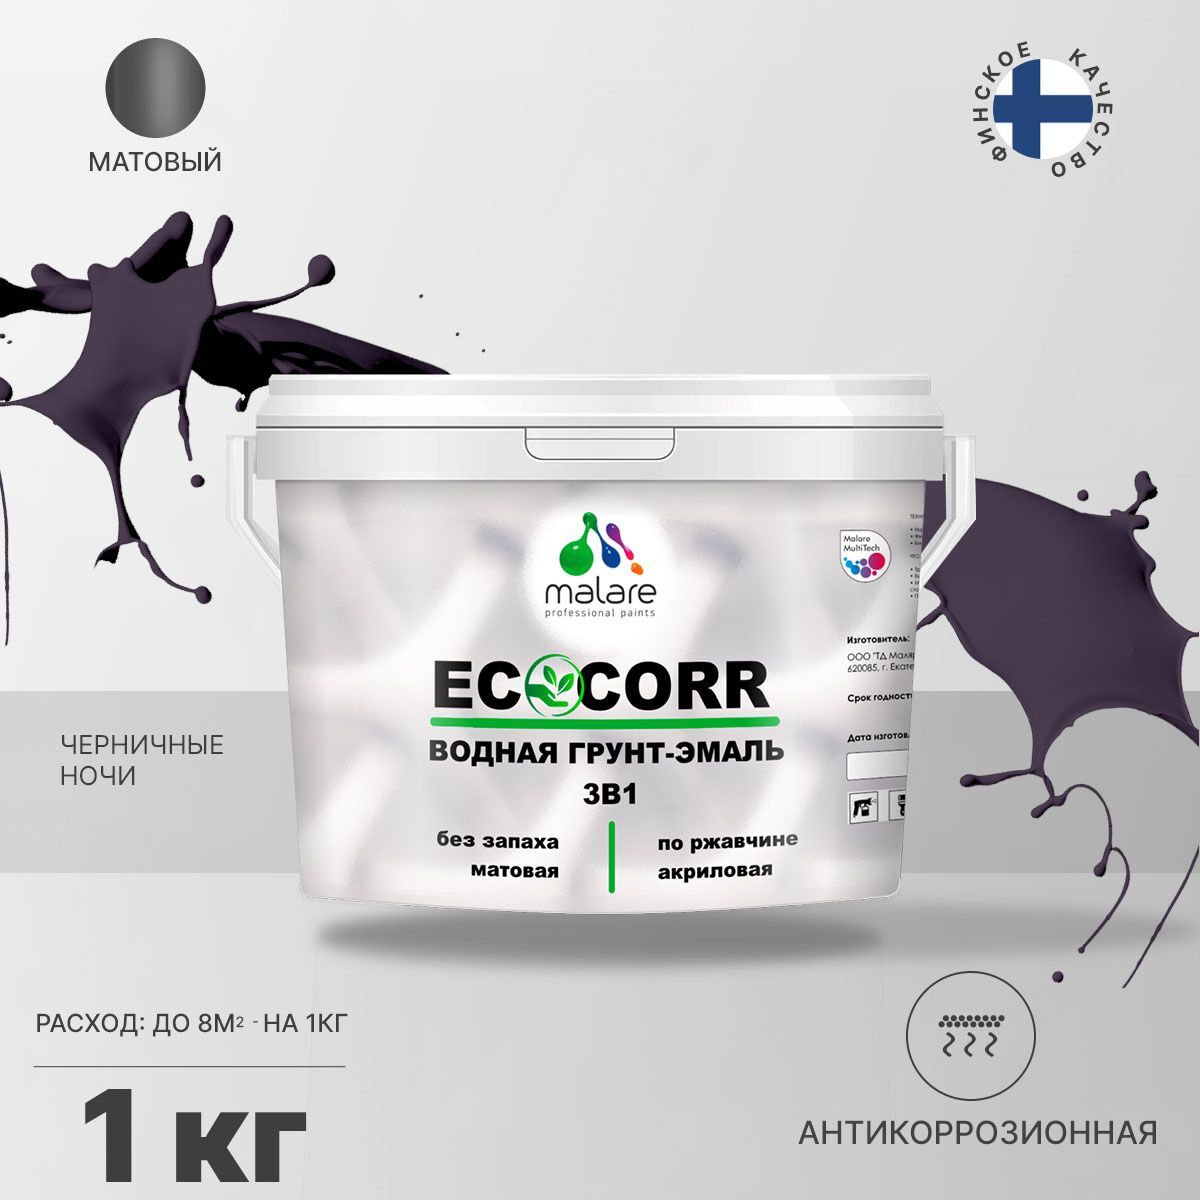 Грунт-эмаль 3 в 1 водная Malare EcoCorr антикоррозионная Акриловая, 1 кг черничные ночи